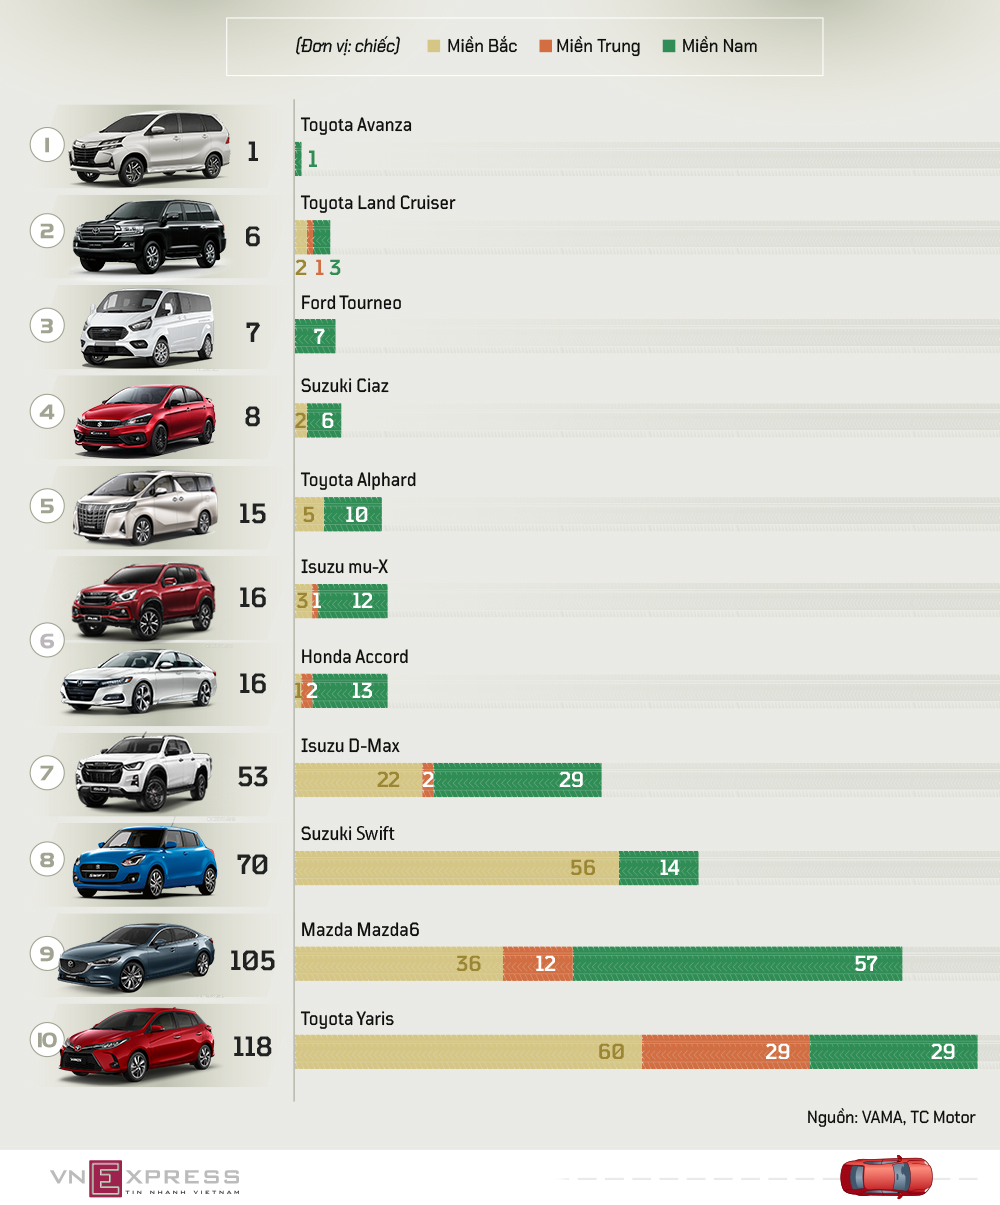 Toyota Avanza đứng đầu danh sách với kỷ lục 1 xe bán ra trong tháng (Đồ họa: Vnexpress)